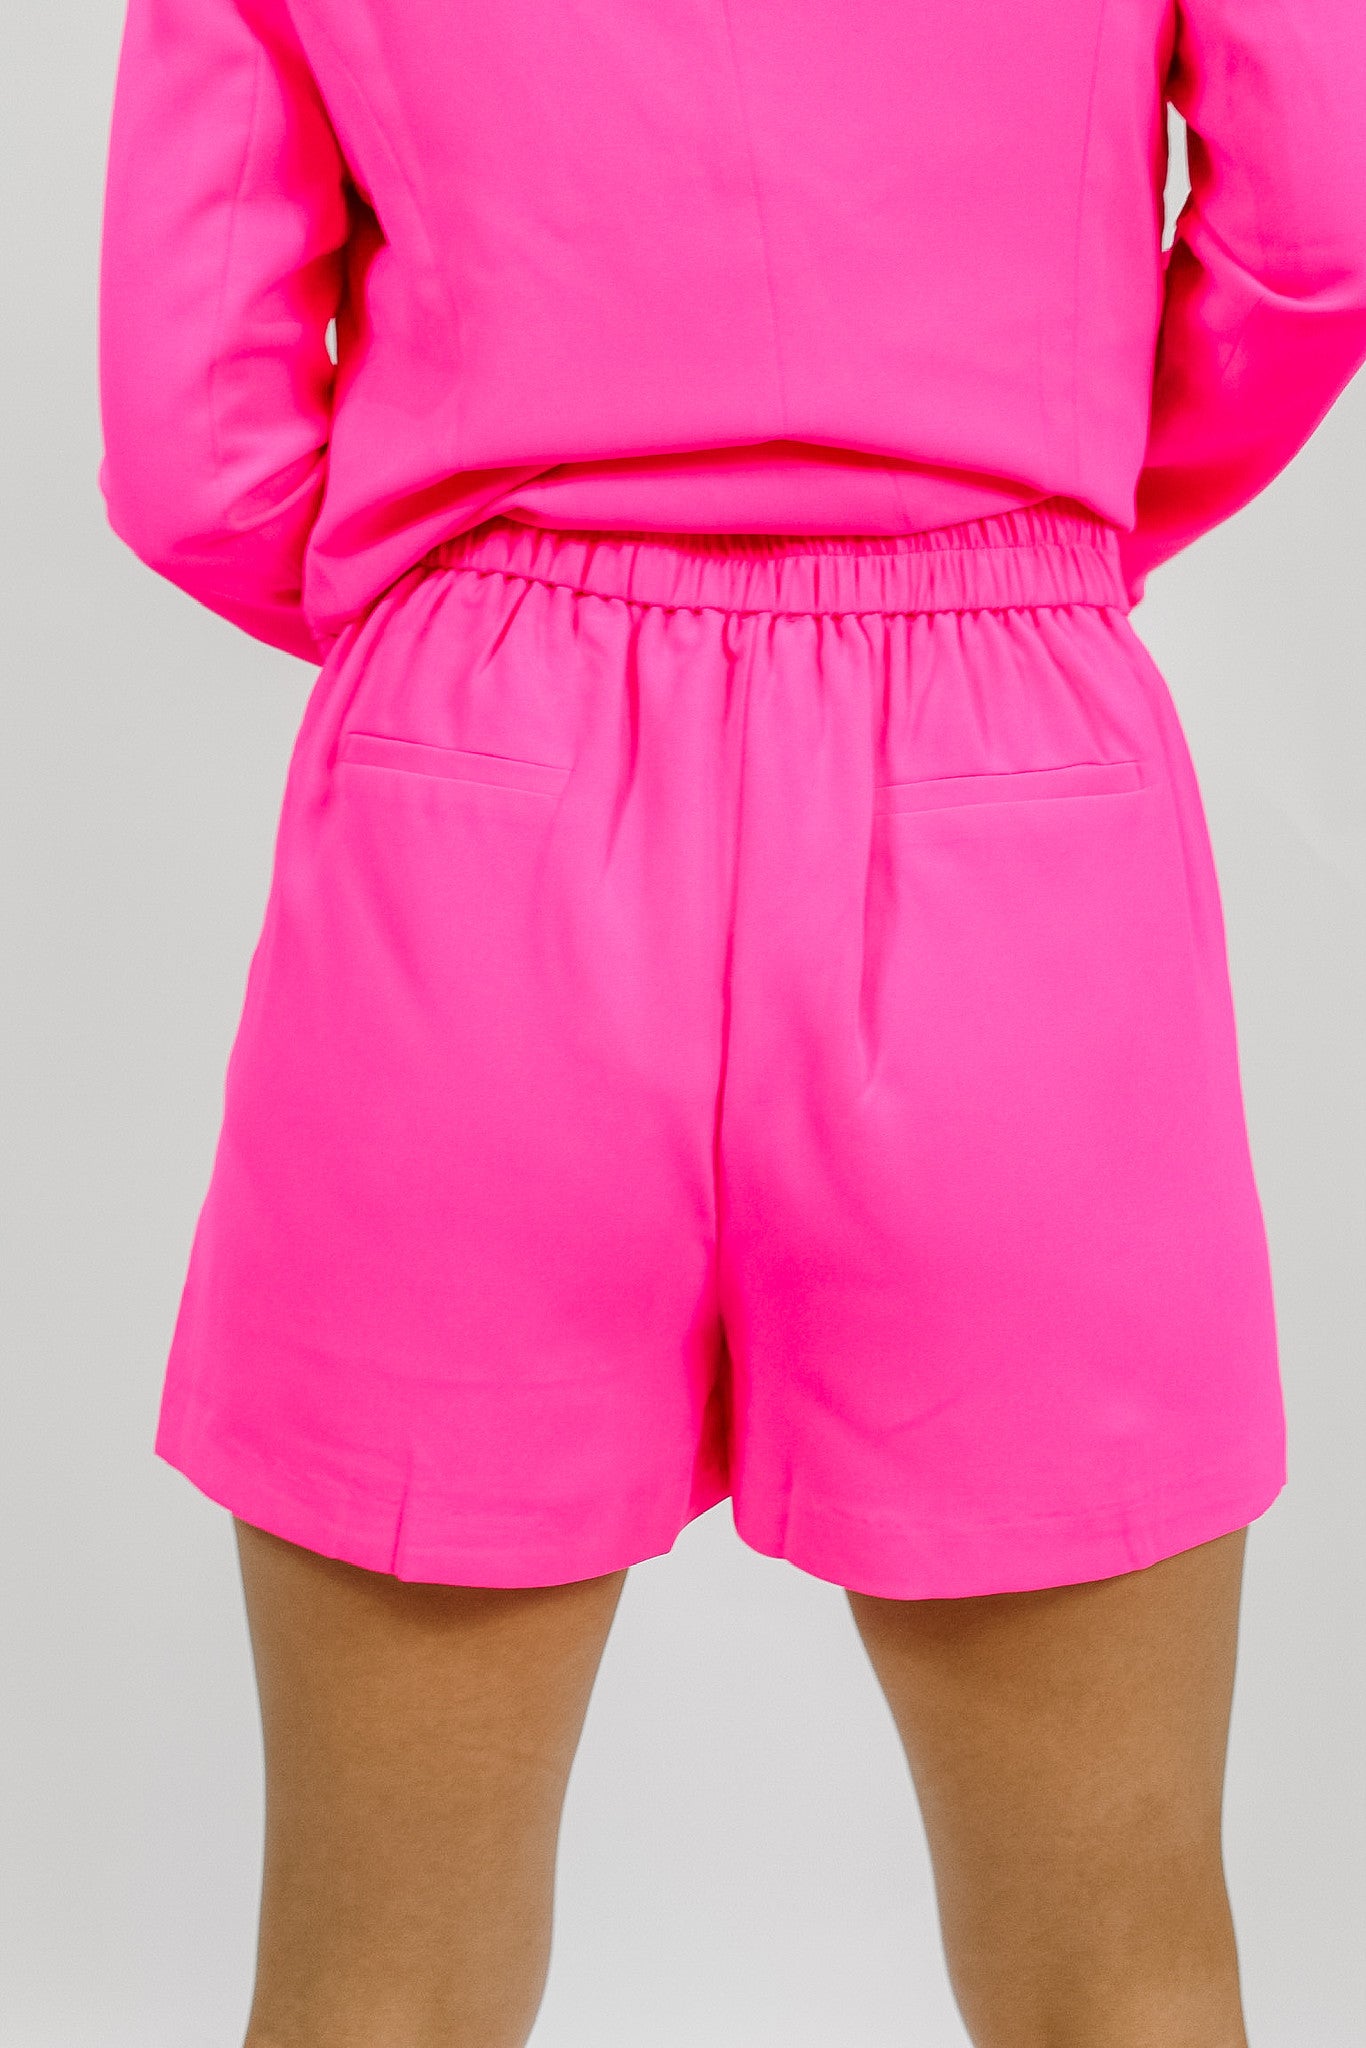 Elite Highwaisted Shorts - Hot Pink